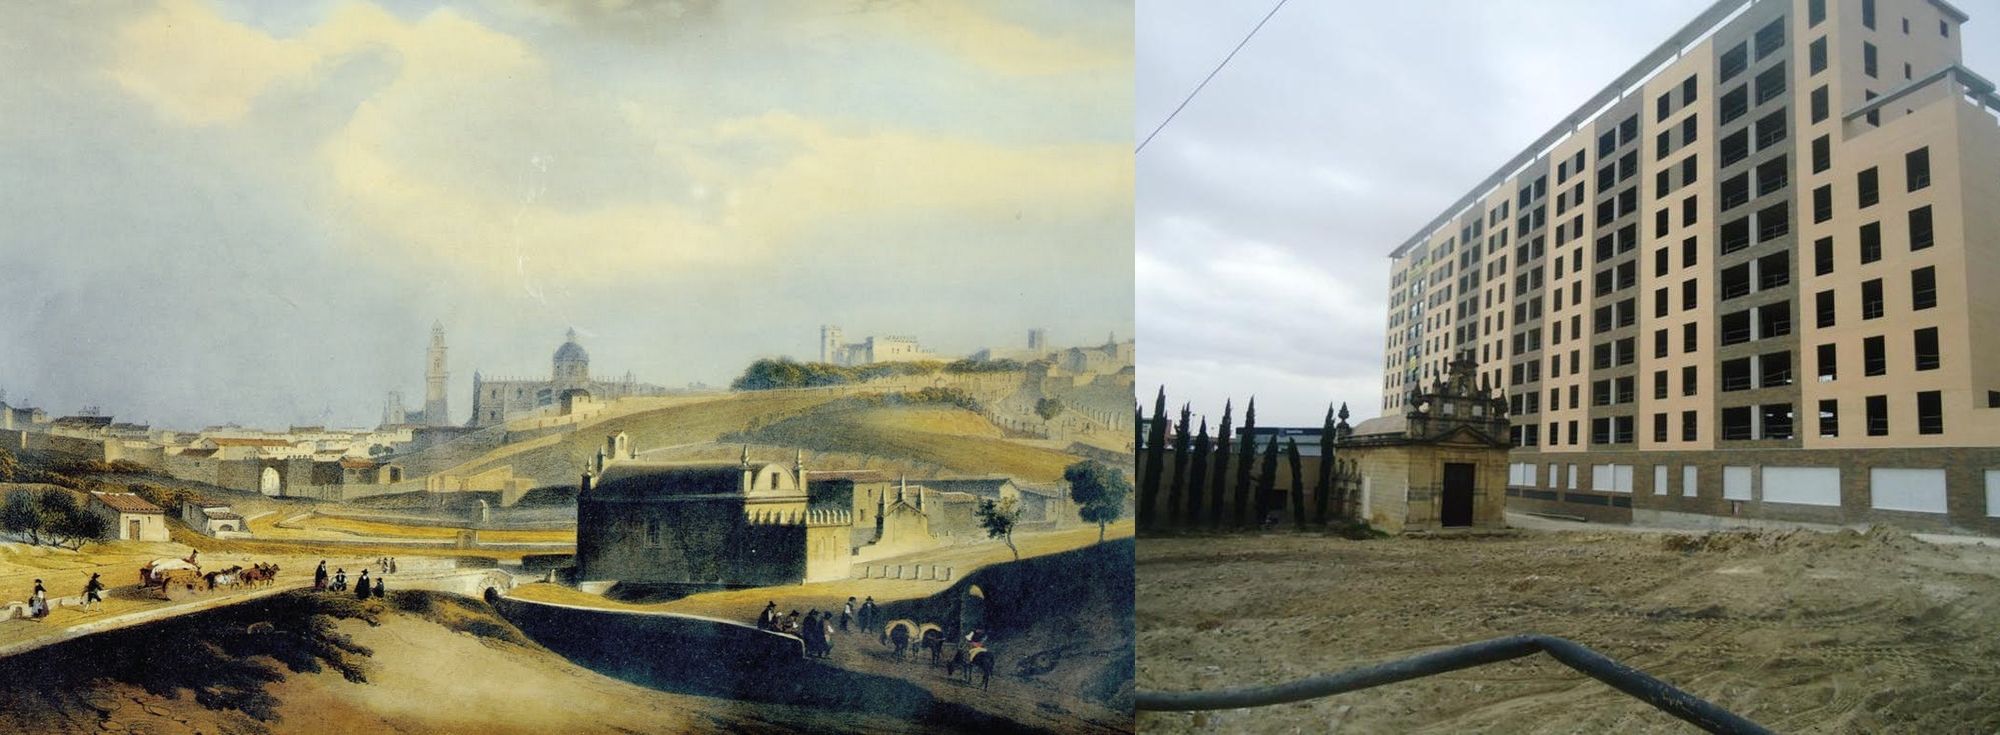 Evolución del entorno de la ermita de Guía en Jerez.